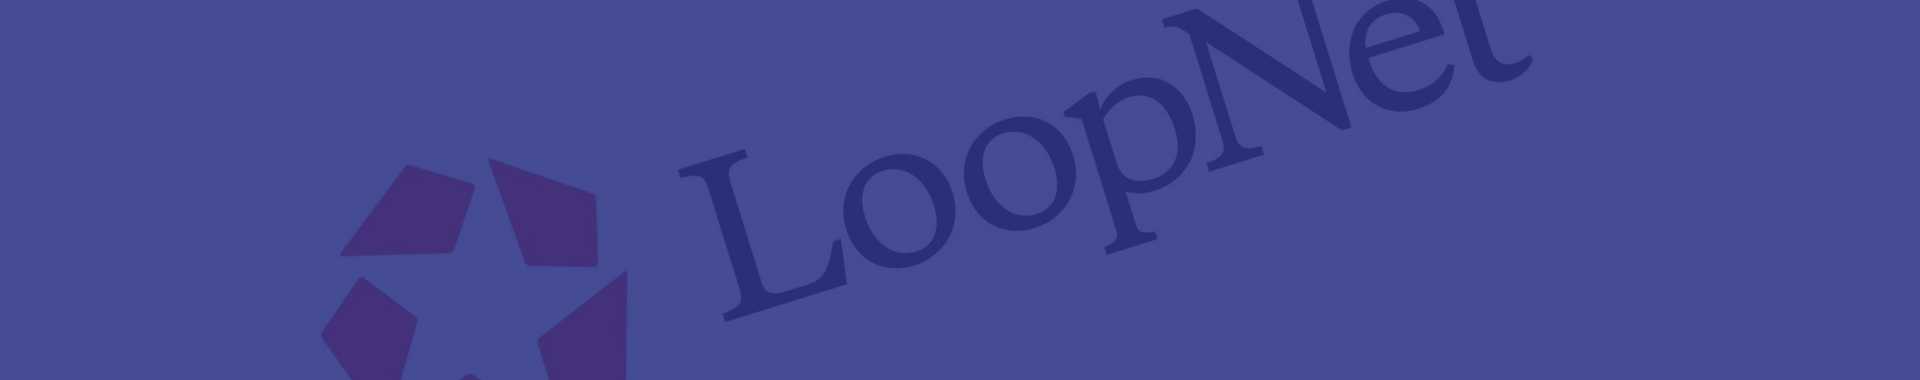 What is LoopNet?